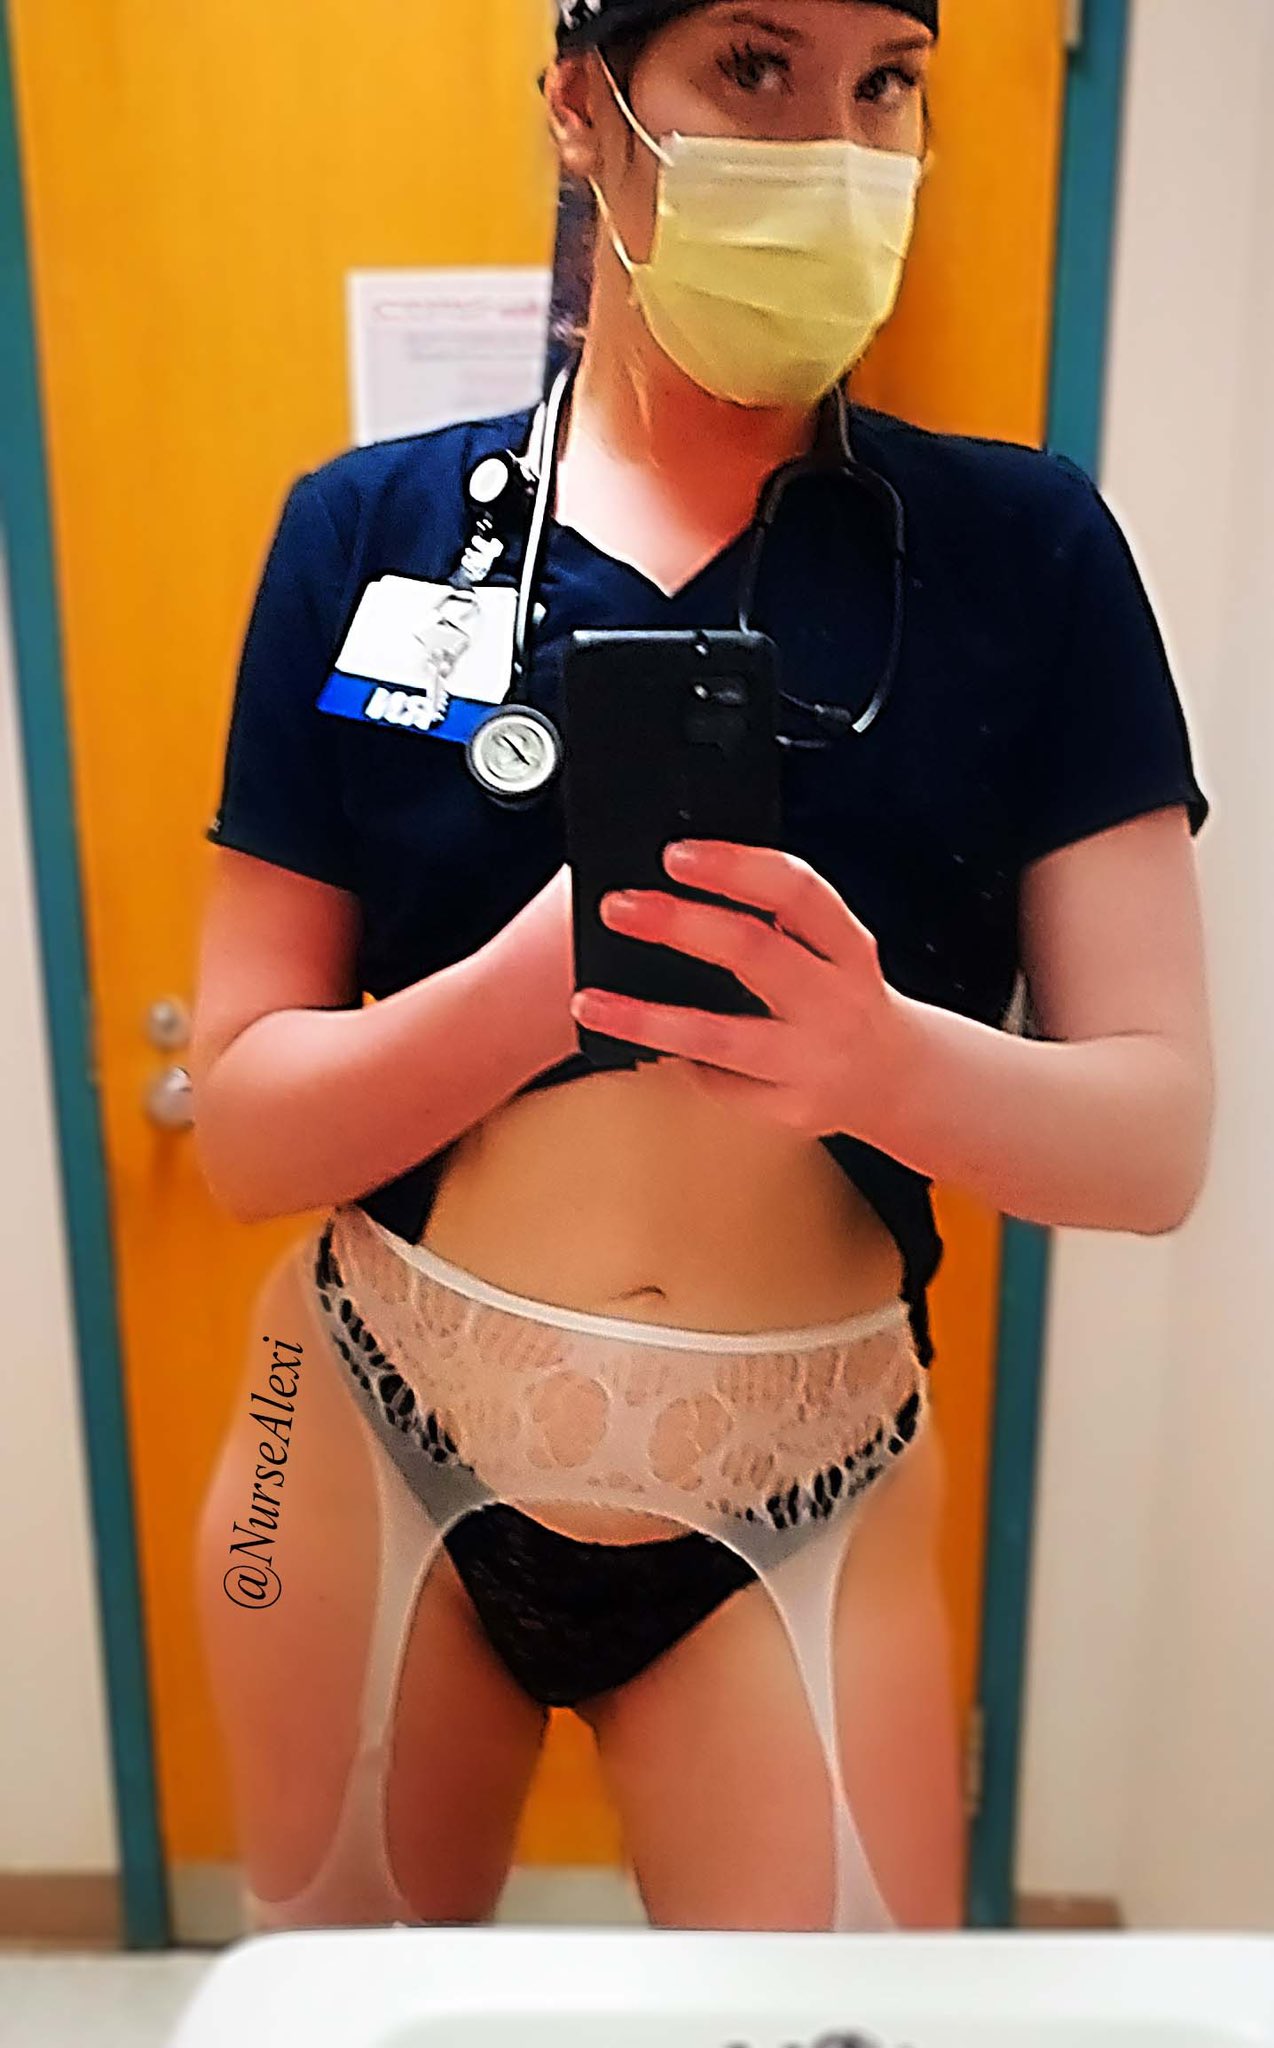 NurseAlexi on X: Nurse Alexi here to help 😊😁